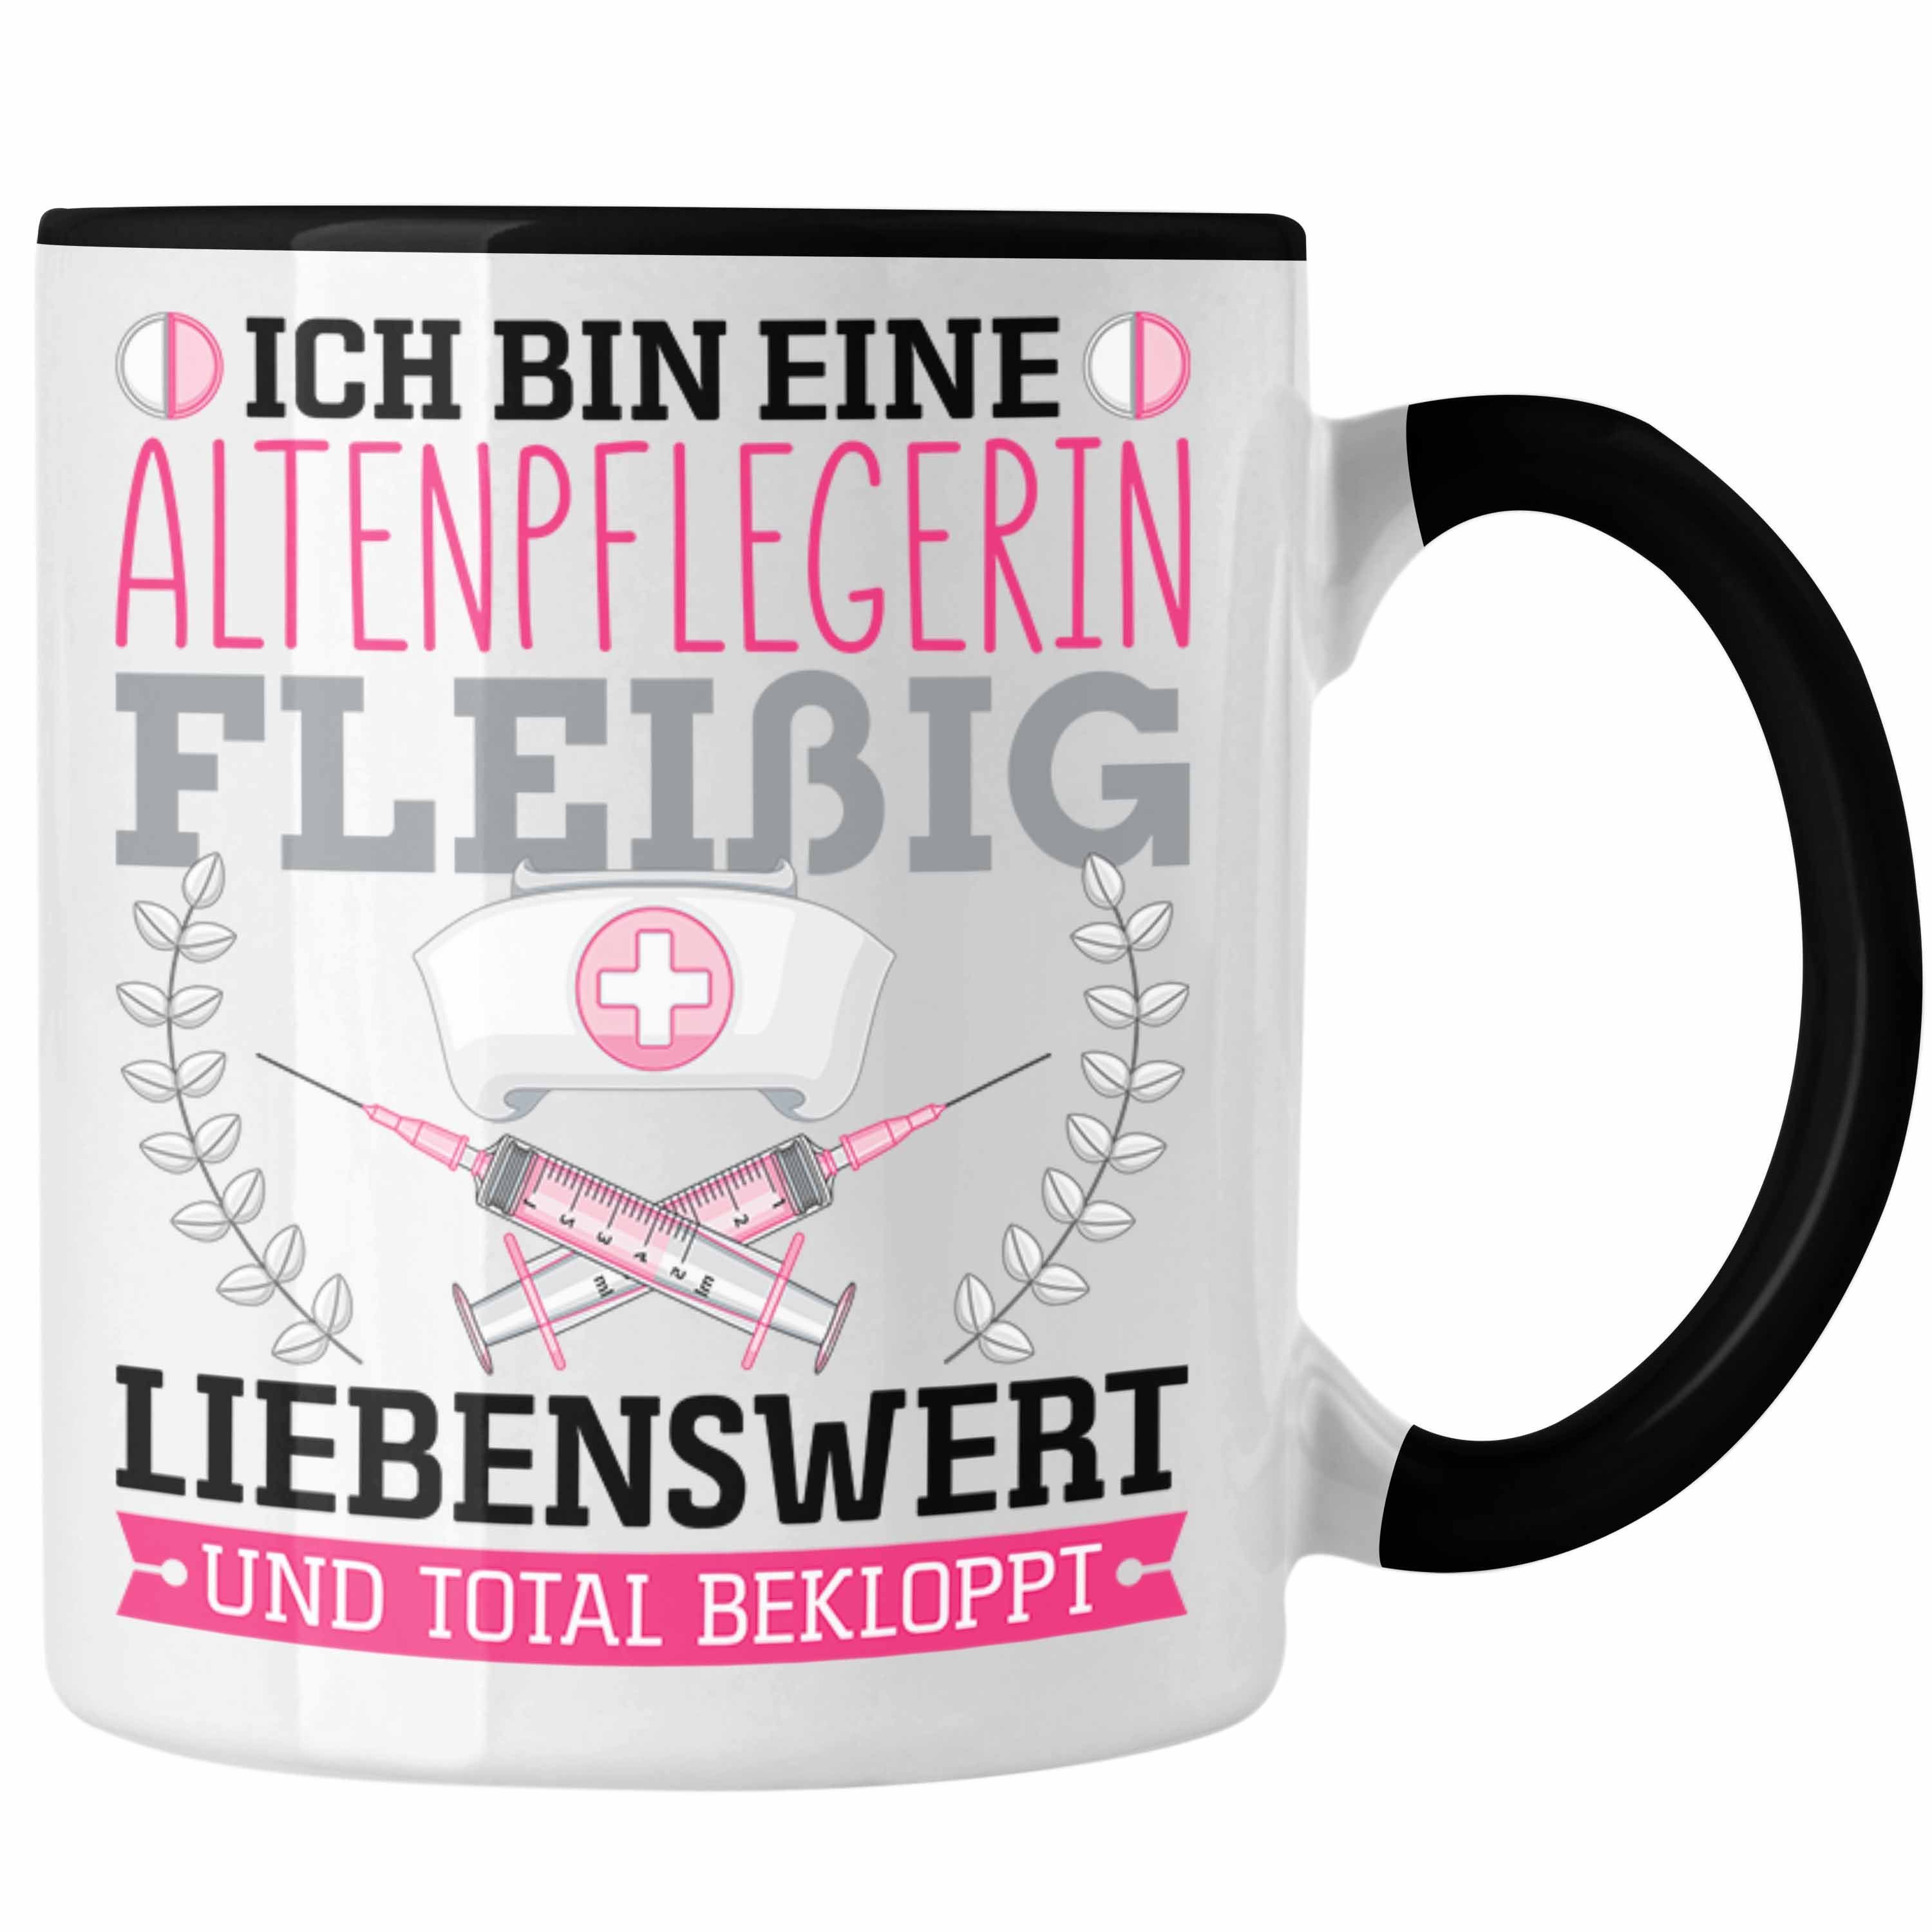 Trendation Tasse Altenpflegerin Fleißig Bekloppt Tasse Geschenk Altenpfleger Frauen Ges Schwarz